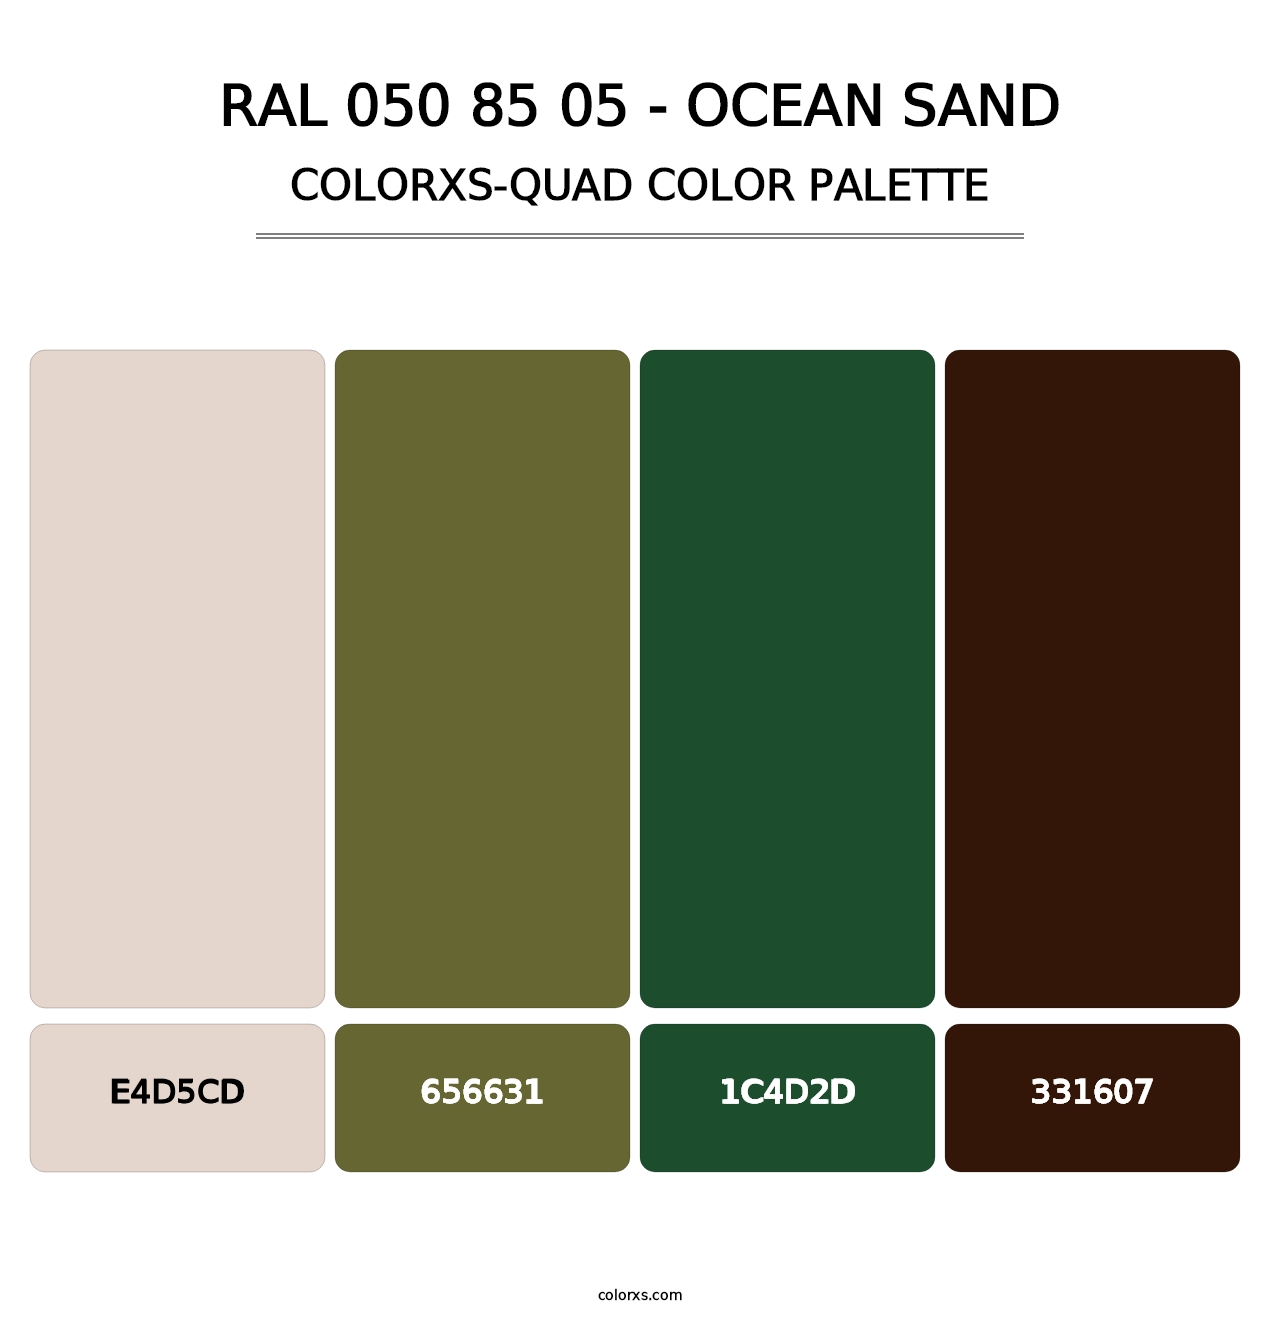 RAL 050 85 05 - Ocean Sand - Colorxs Quad Palette